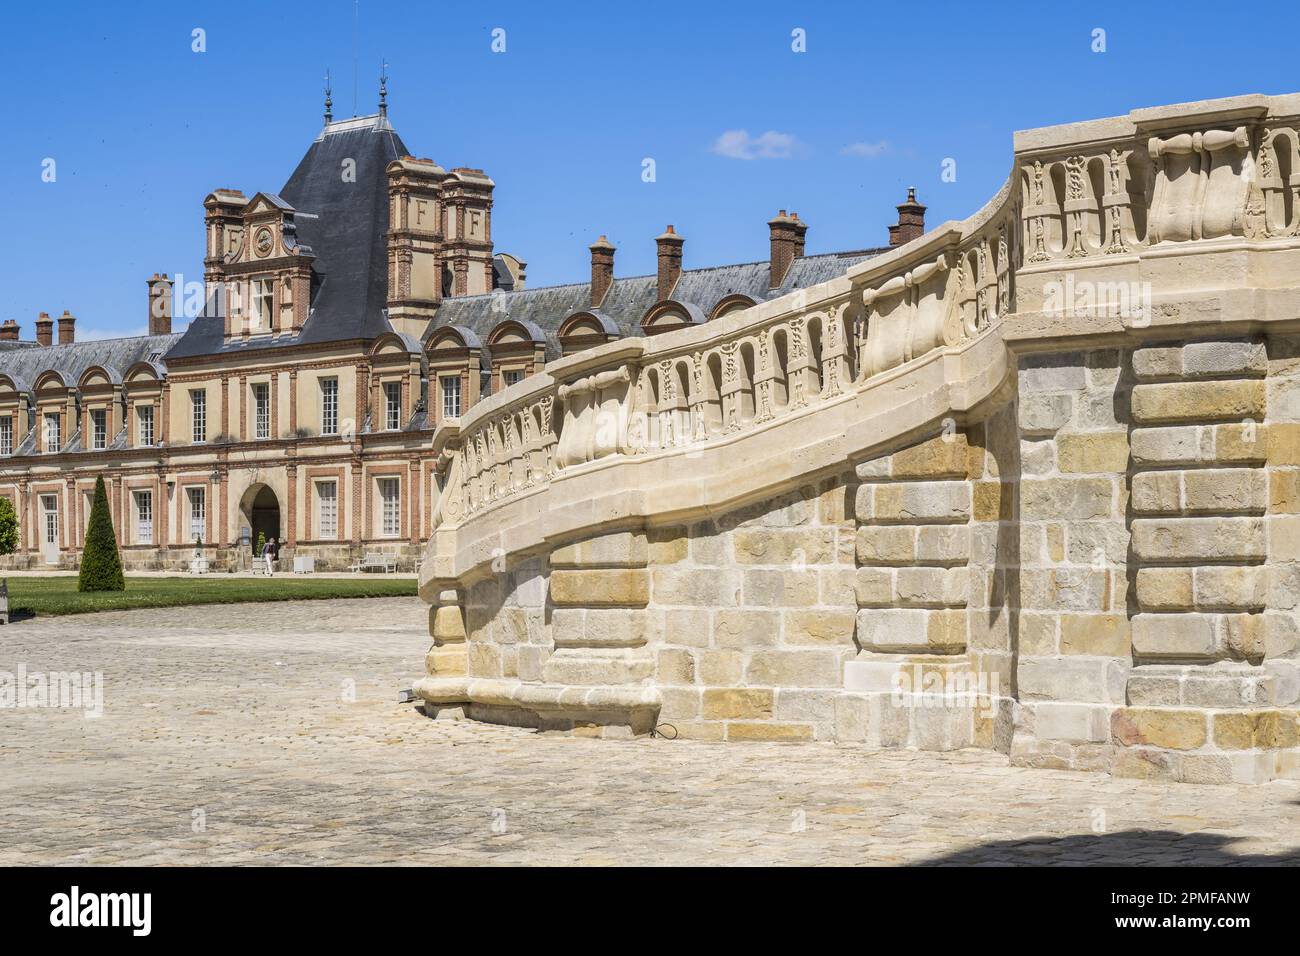 Francia, Seine-et-Marne, Fontainebleau, castello di Fontainebleau dichiarato patrimonio mondiale dall'UNESCO, Cour du Cheval blanc, scala a ferro di cavallo realizzata nel 1550 da Philibert Delorme poi rifatta tra il 1632 e il 1634 da Jean Androuet du Cerceau, è composto da due monumentali voli paralleli a grecato di 46 gradini Foto Stock